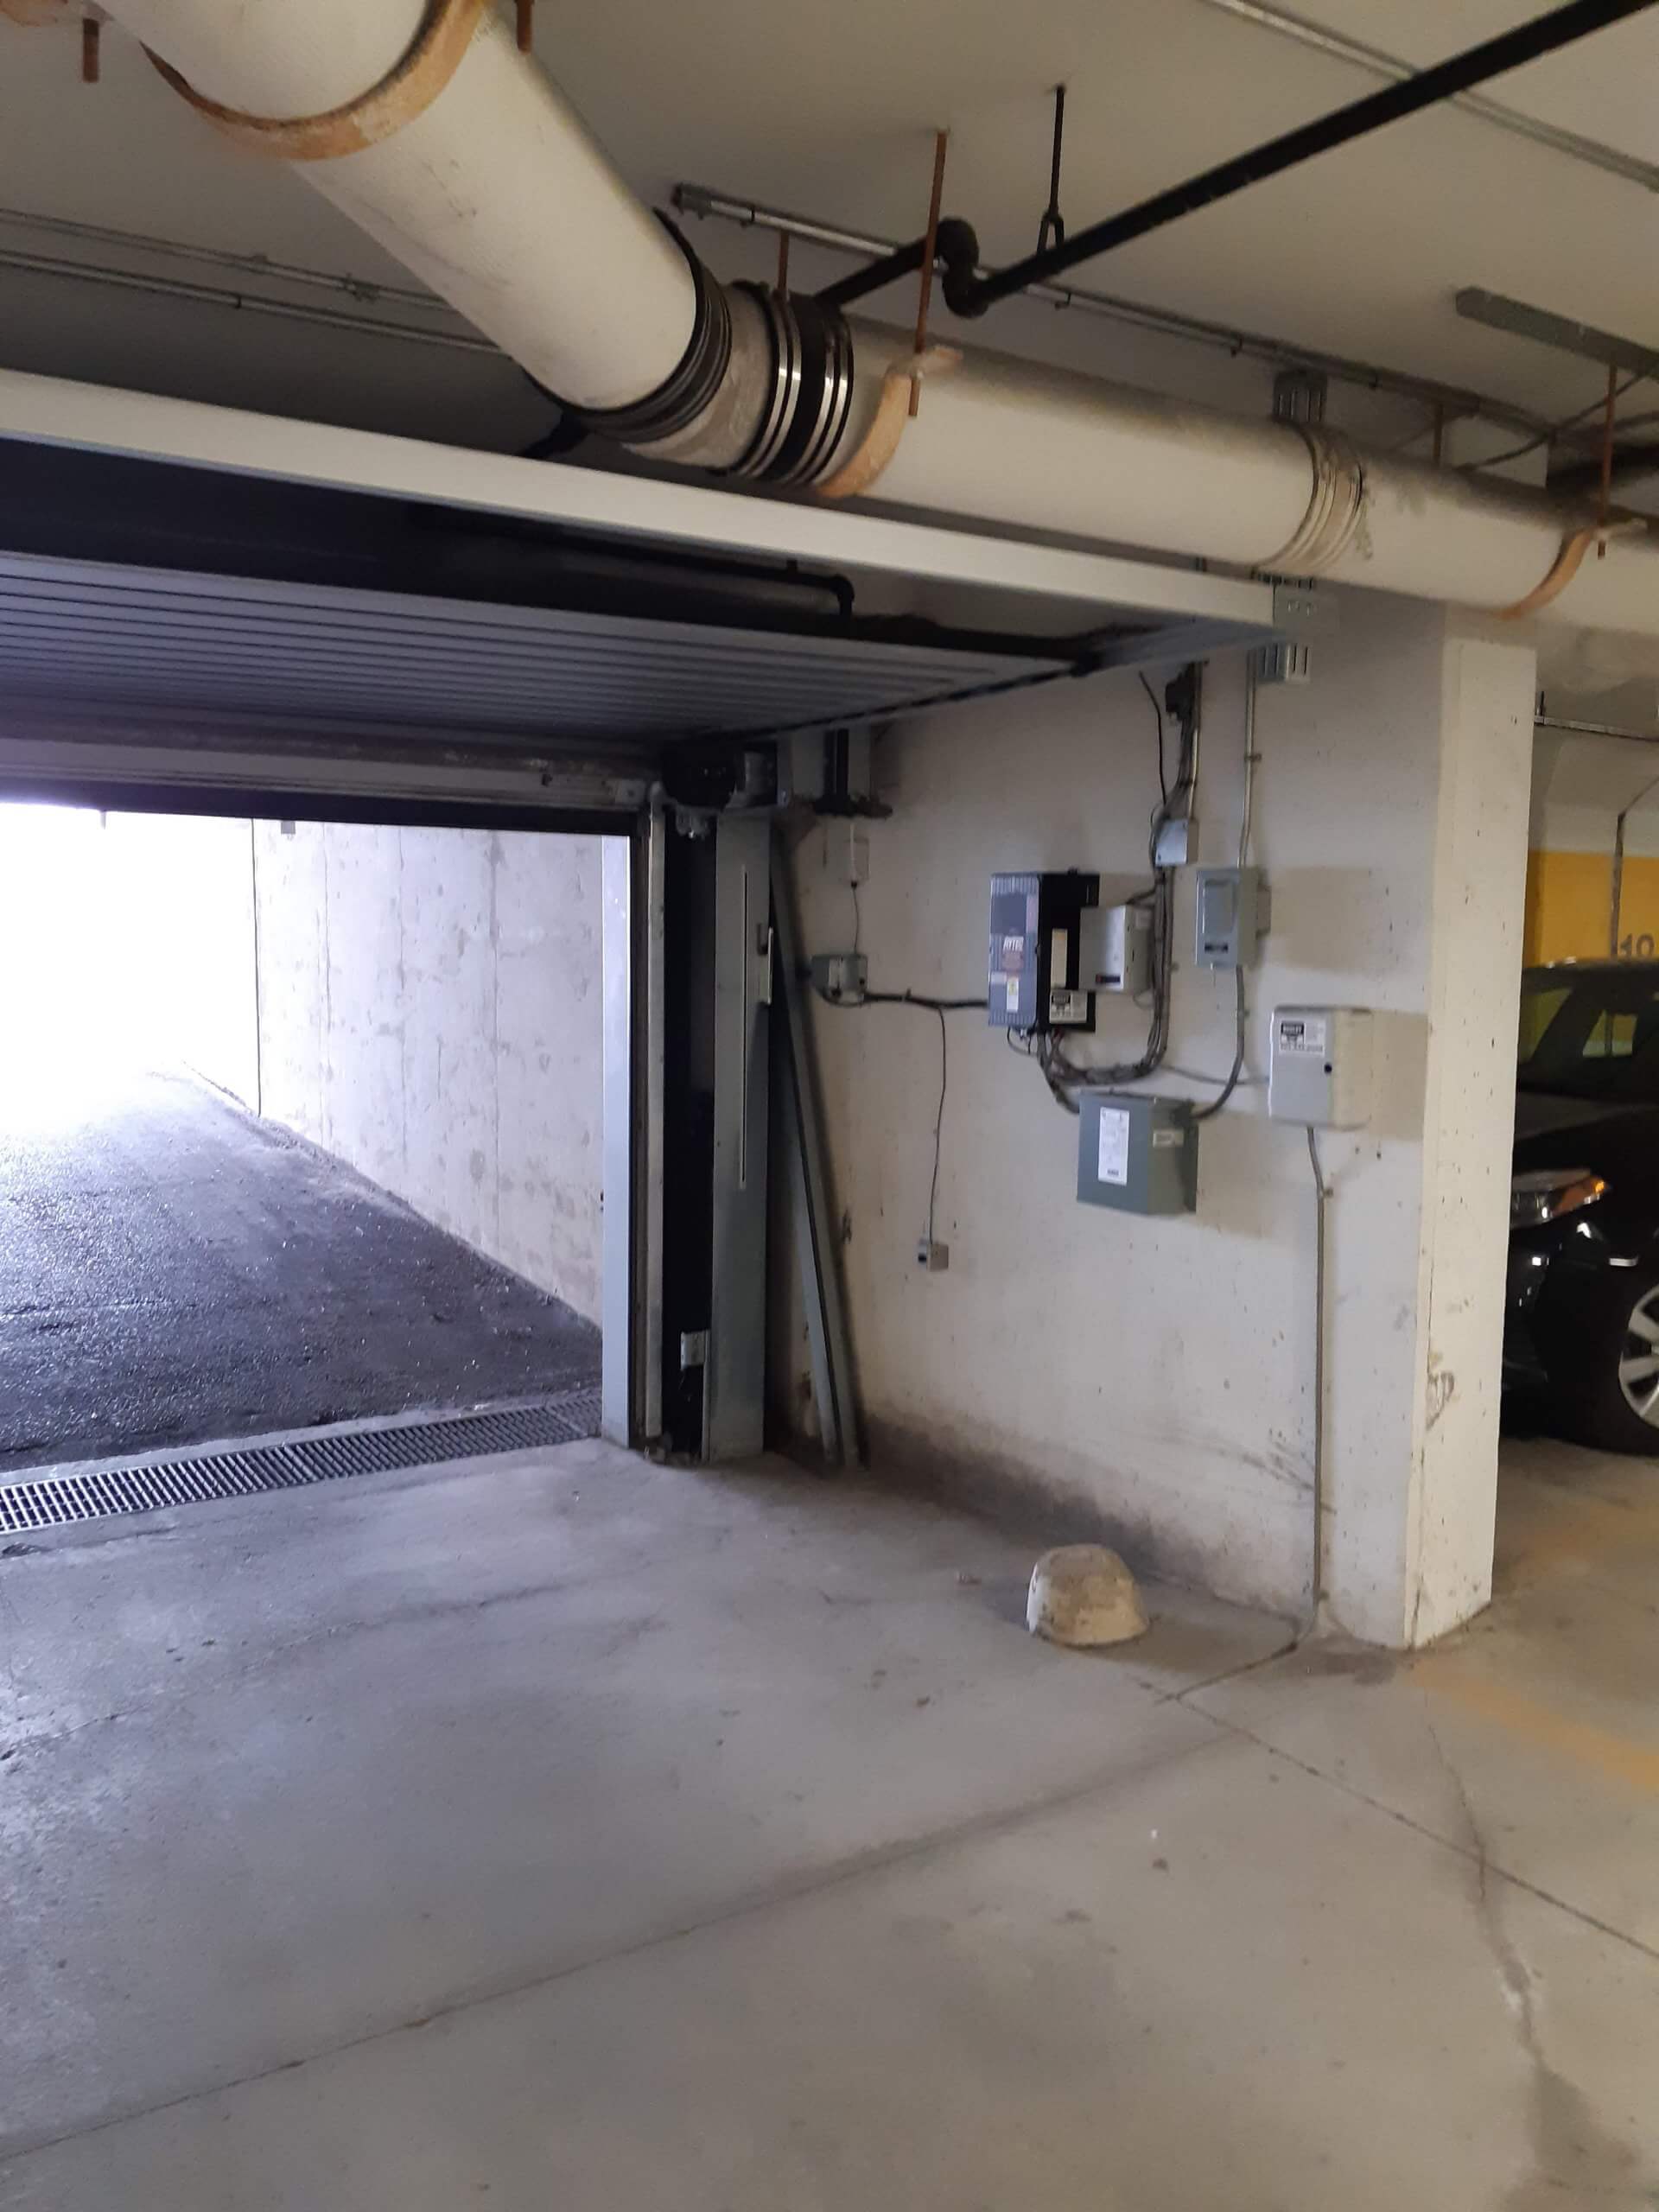 Underground parking garage entrance